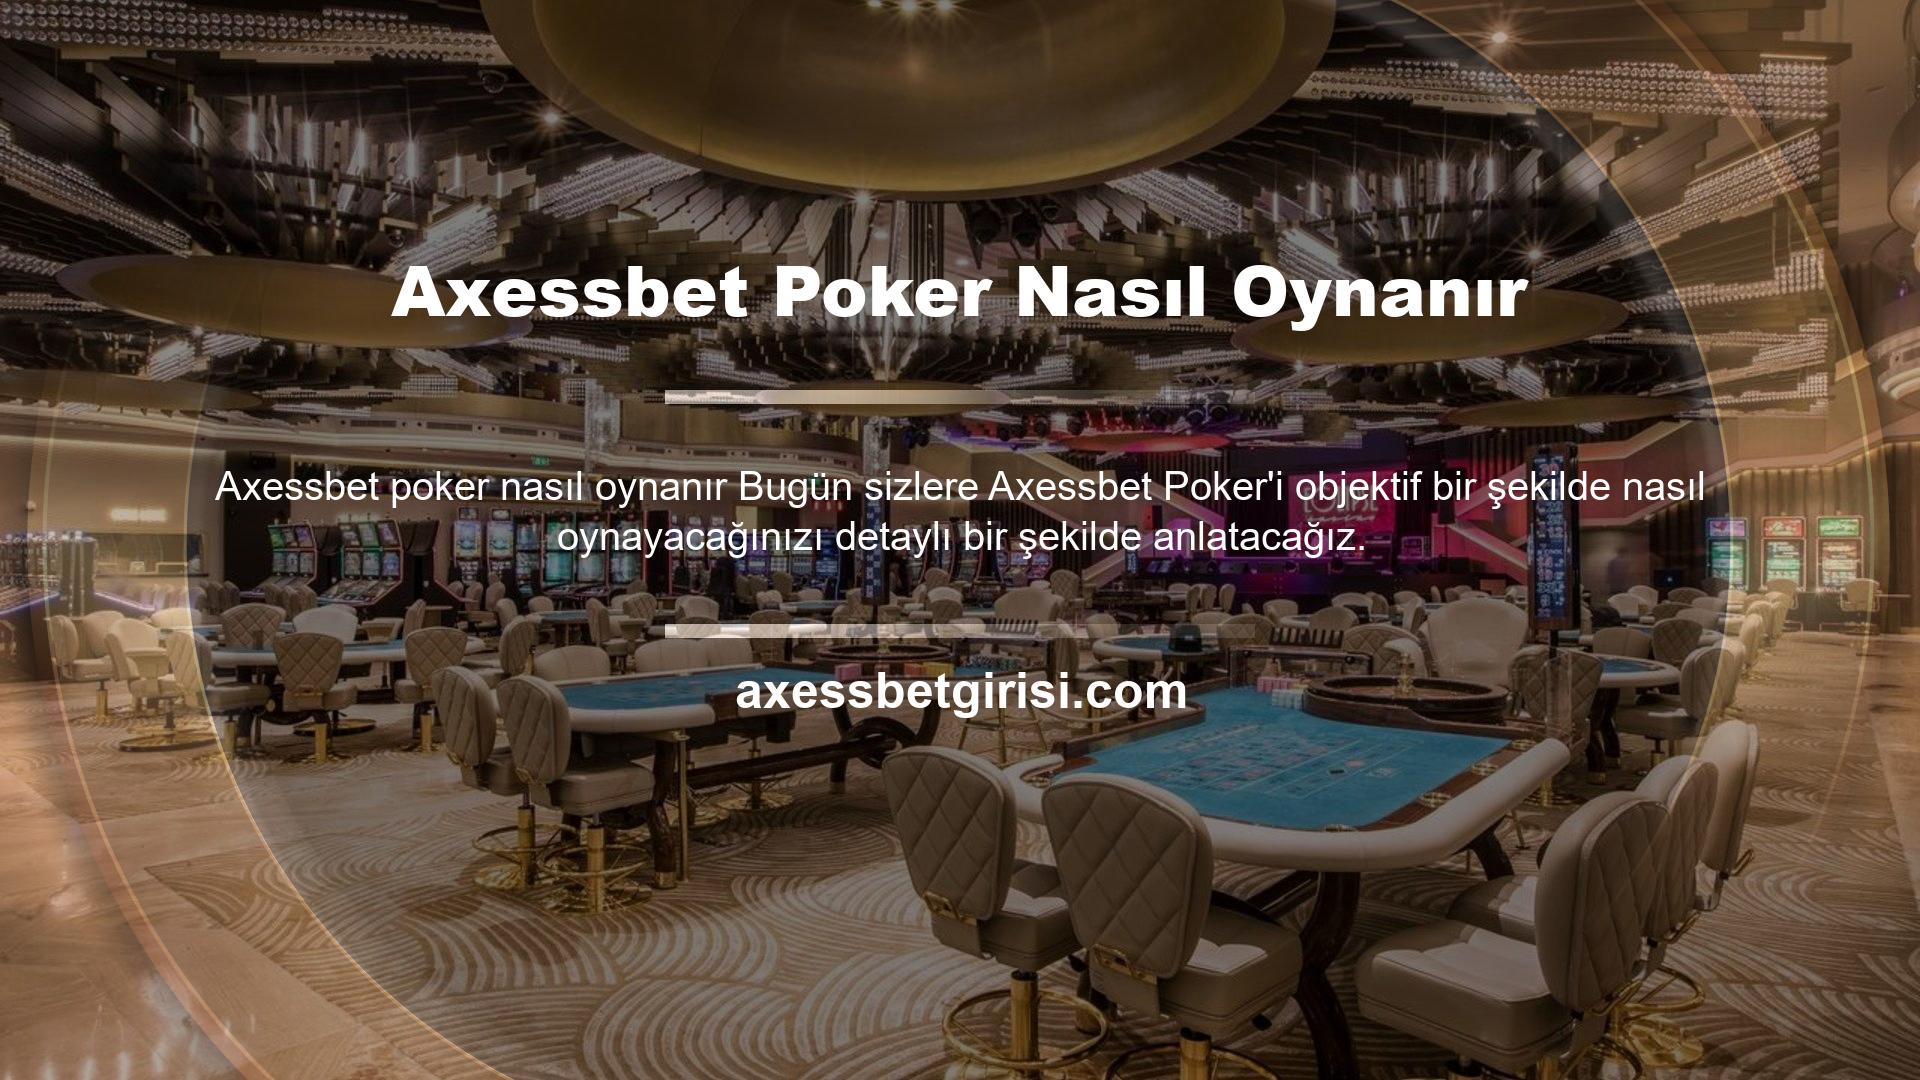 Axessbet Poker'in canlı oyun sitesi, kart oyunu tutkunlarının mutlaka ziyaret etmesi gereken bir sitedir ve kaliteli hizmet sunmak üzerine kurulmuş Axessbet poker nasıl oynanır kaliteli bir şirkettir